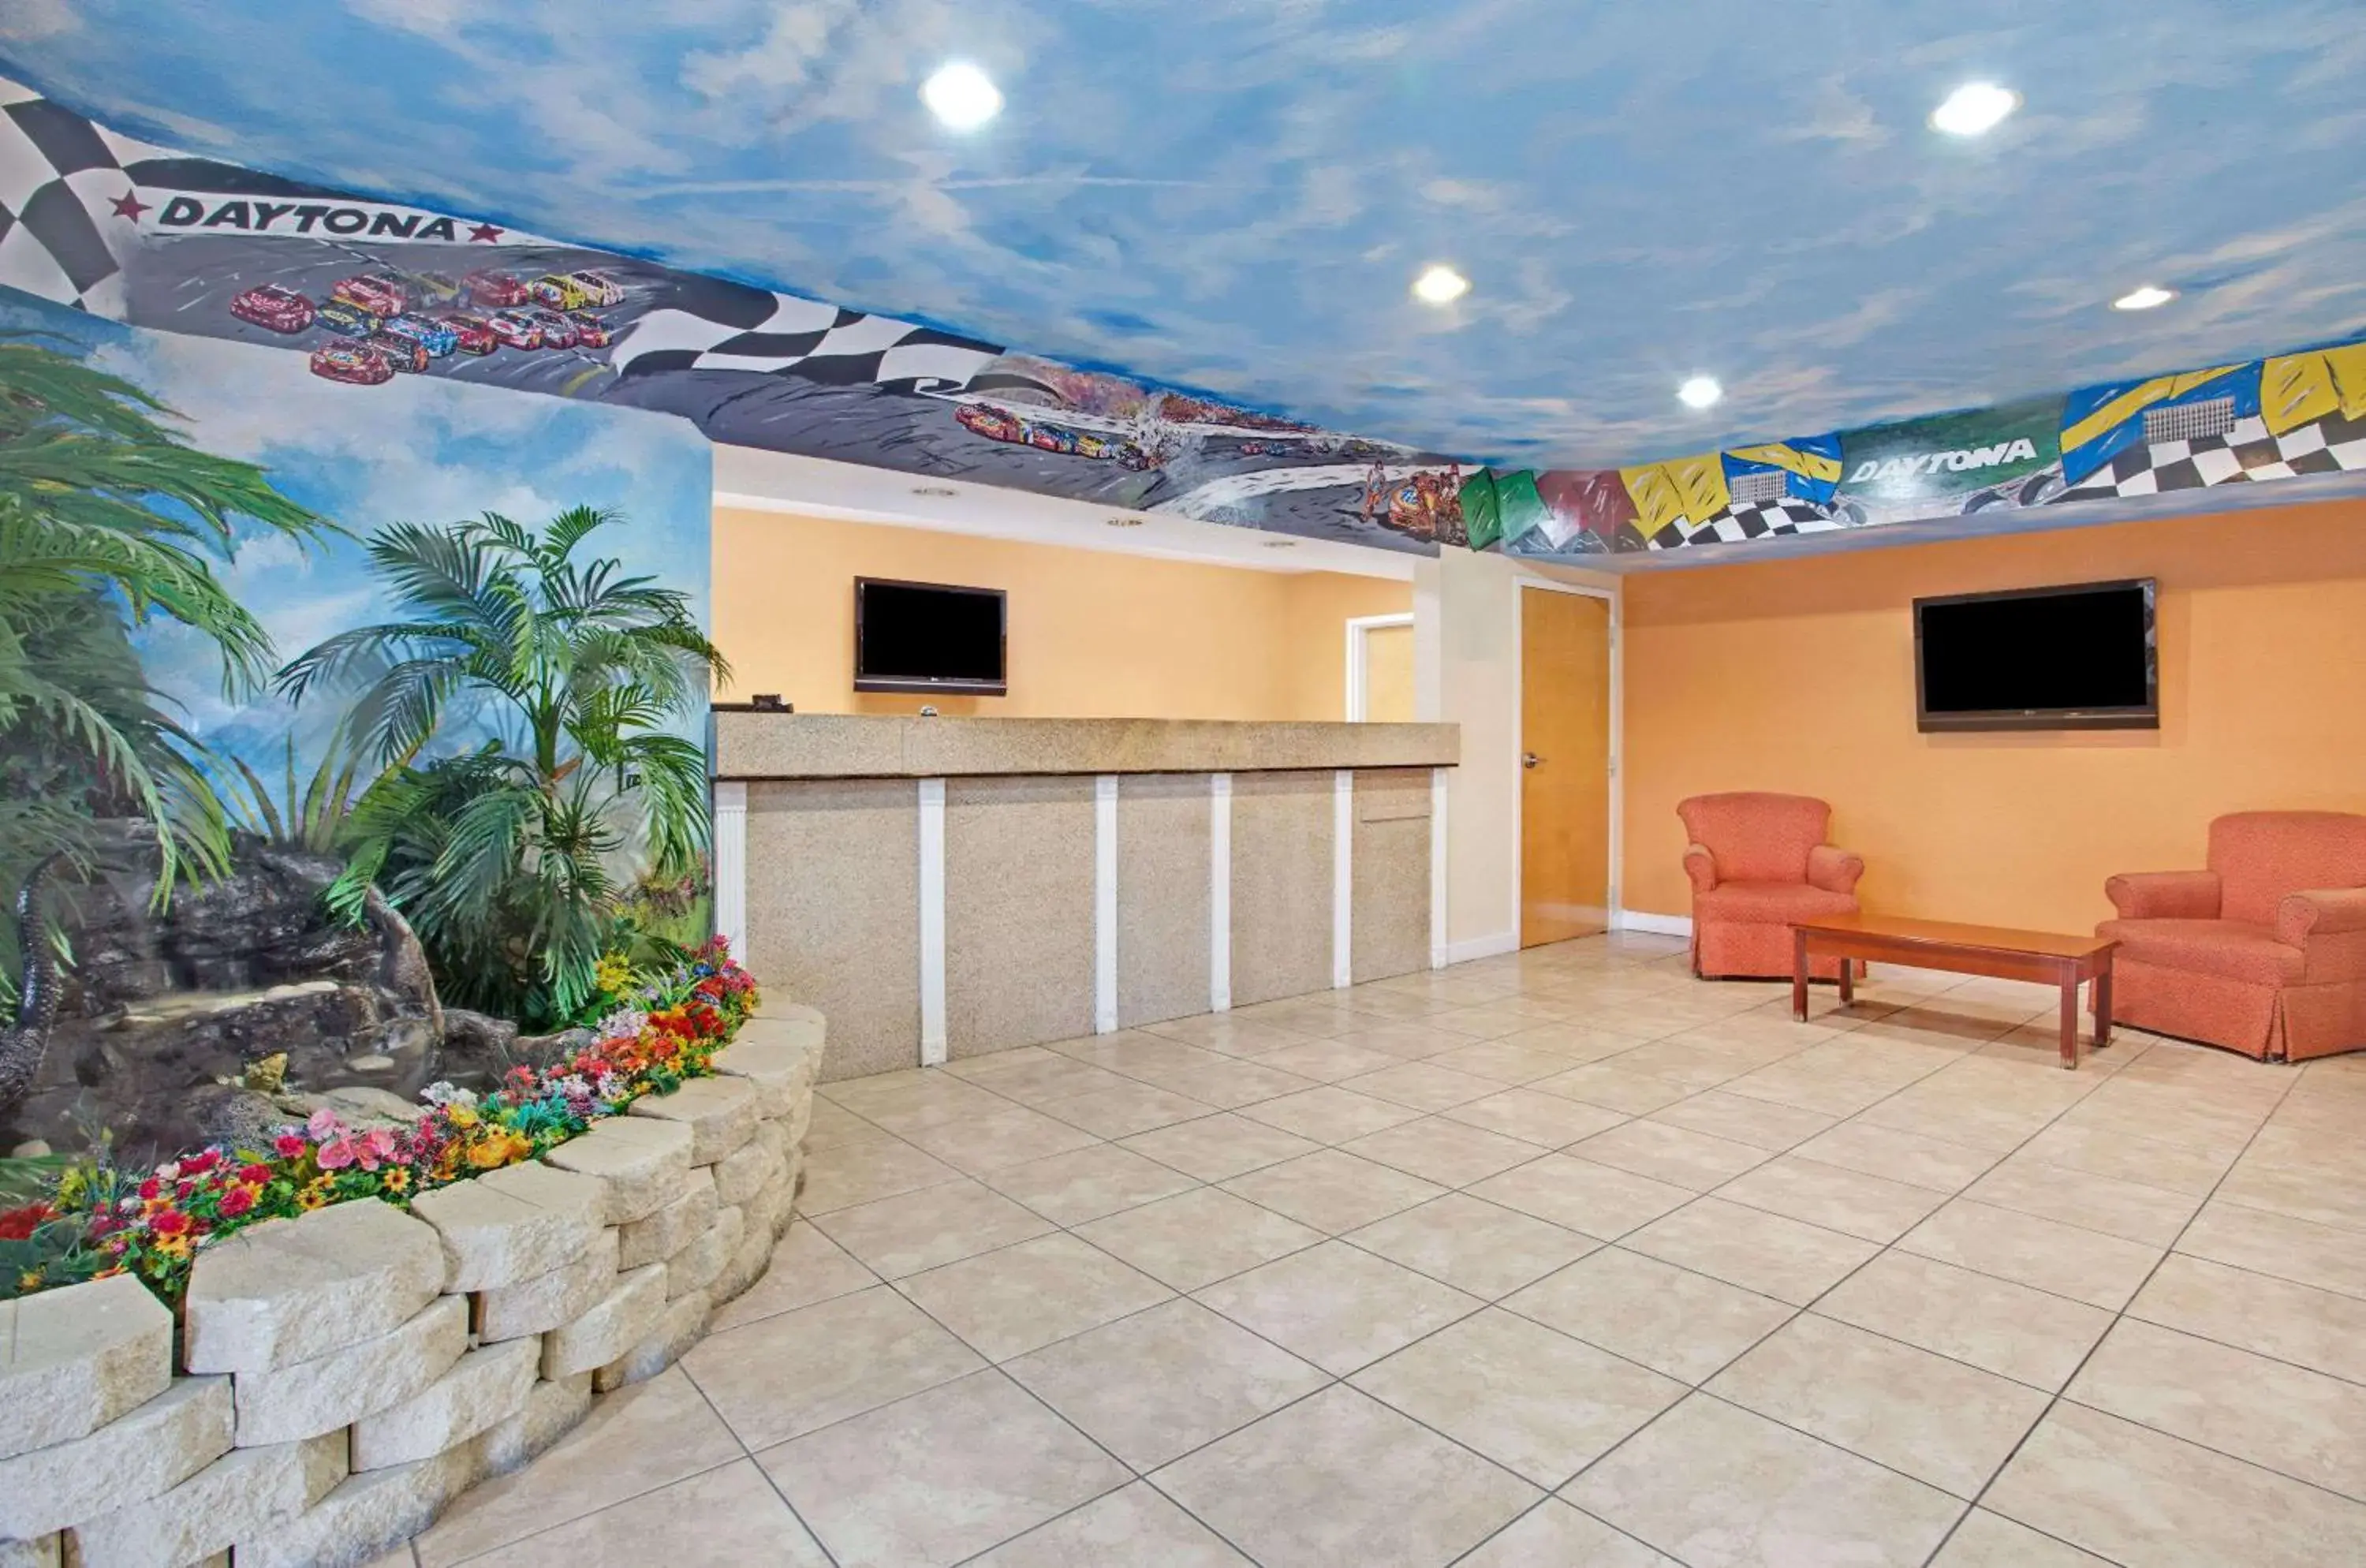 Lobby or reception, Lobby/Reception in Super 8 by Wyndham Daytona Beach